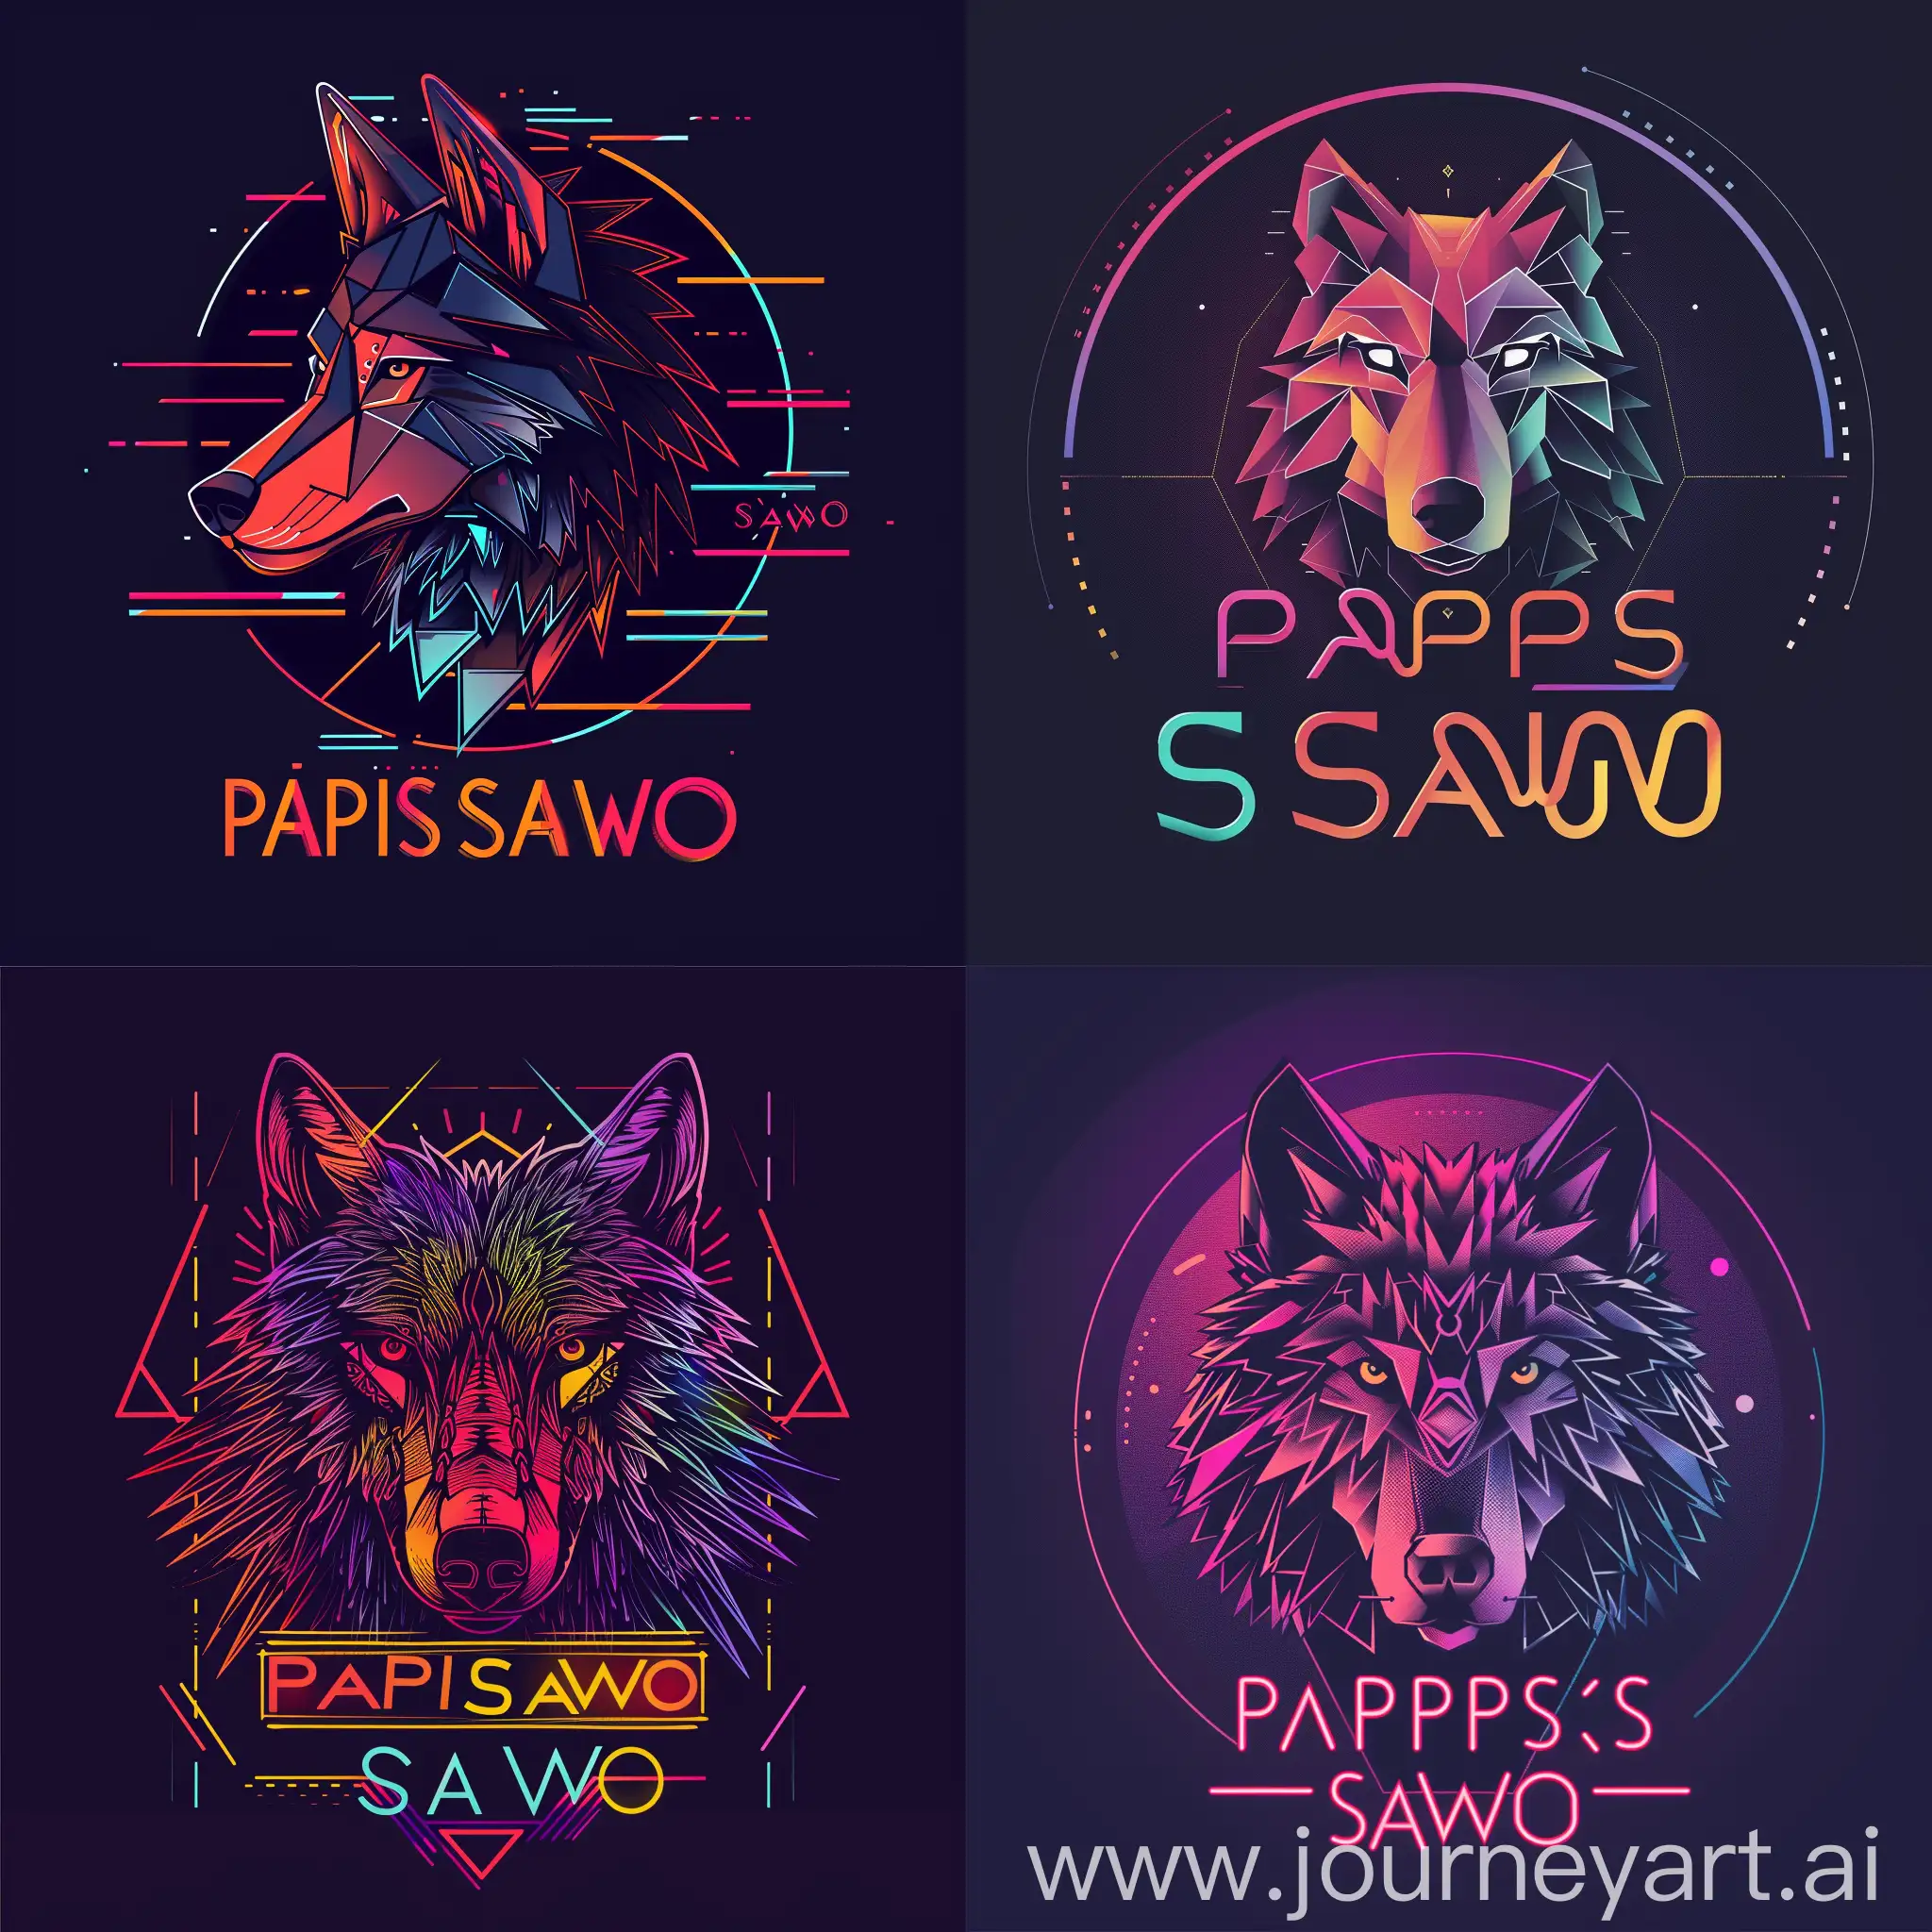 логотип  со словами "PAPIS SAWO", с изображением стилизованного волка в техно-стиле, неоновым шрифтом, волк в стилизованном графическом виде, с использованием геометрических форм и цифровых элементов, чтобы подчеркнуть техно-стиль логотипа, неоновый шрифт для надписи "PAPIS SAWO" добавит эффектного контраста и привлечет внимание к логотипу